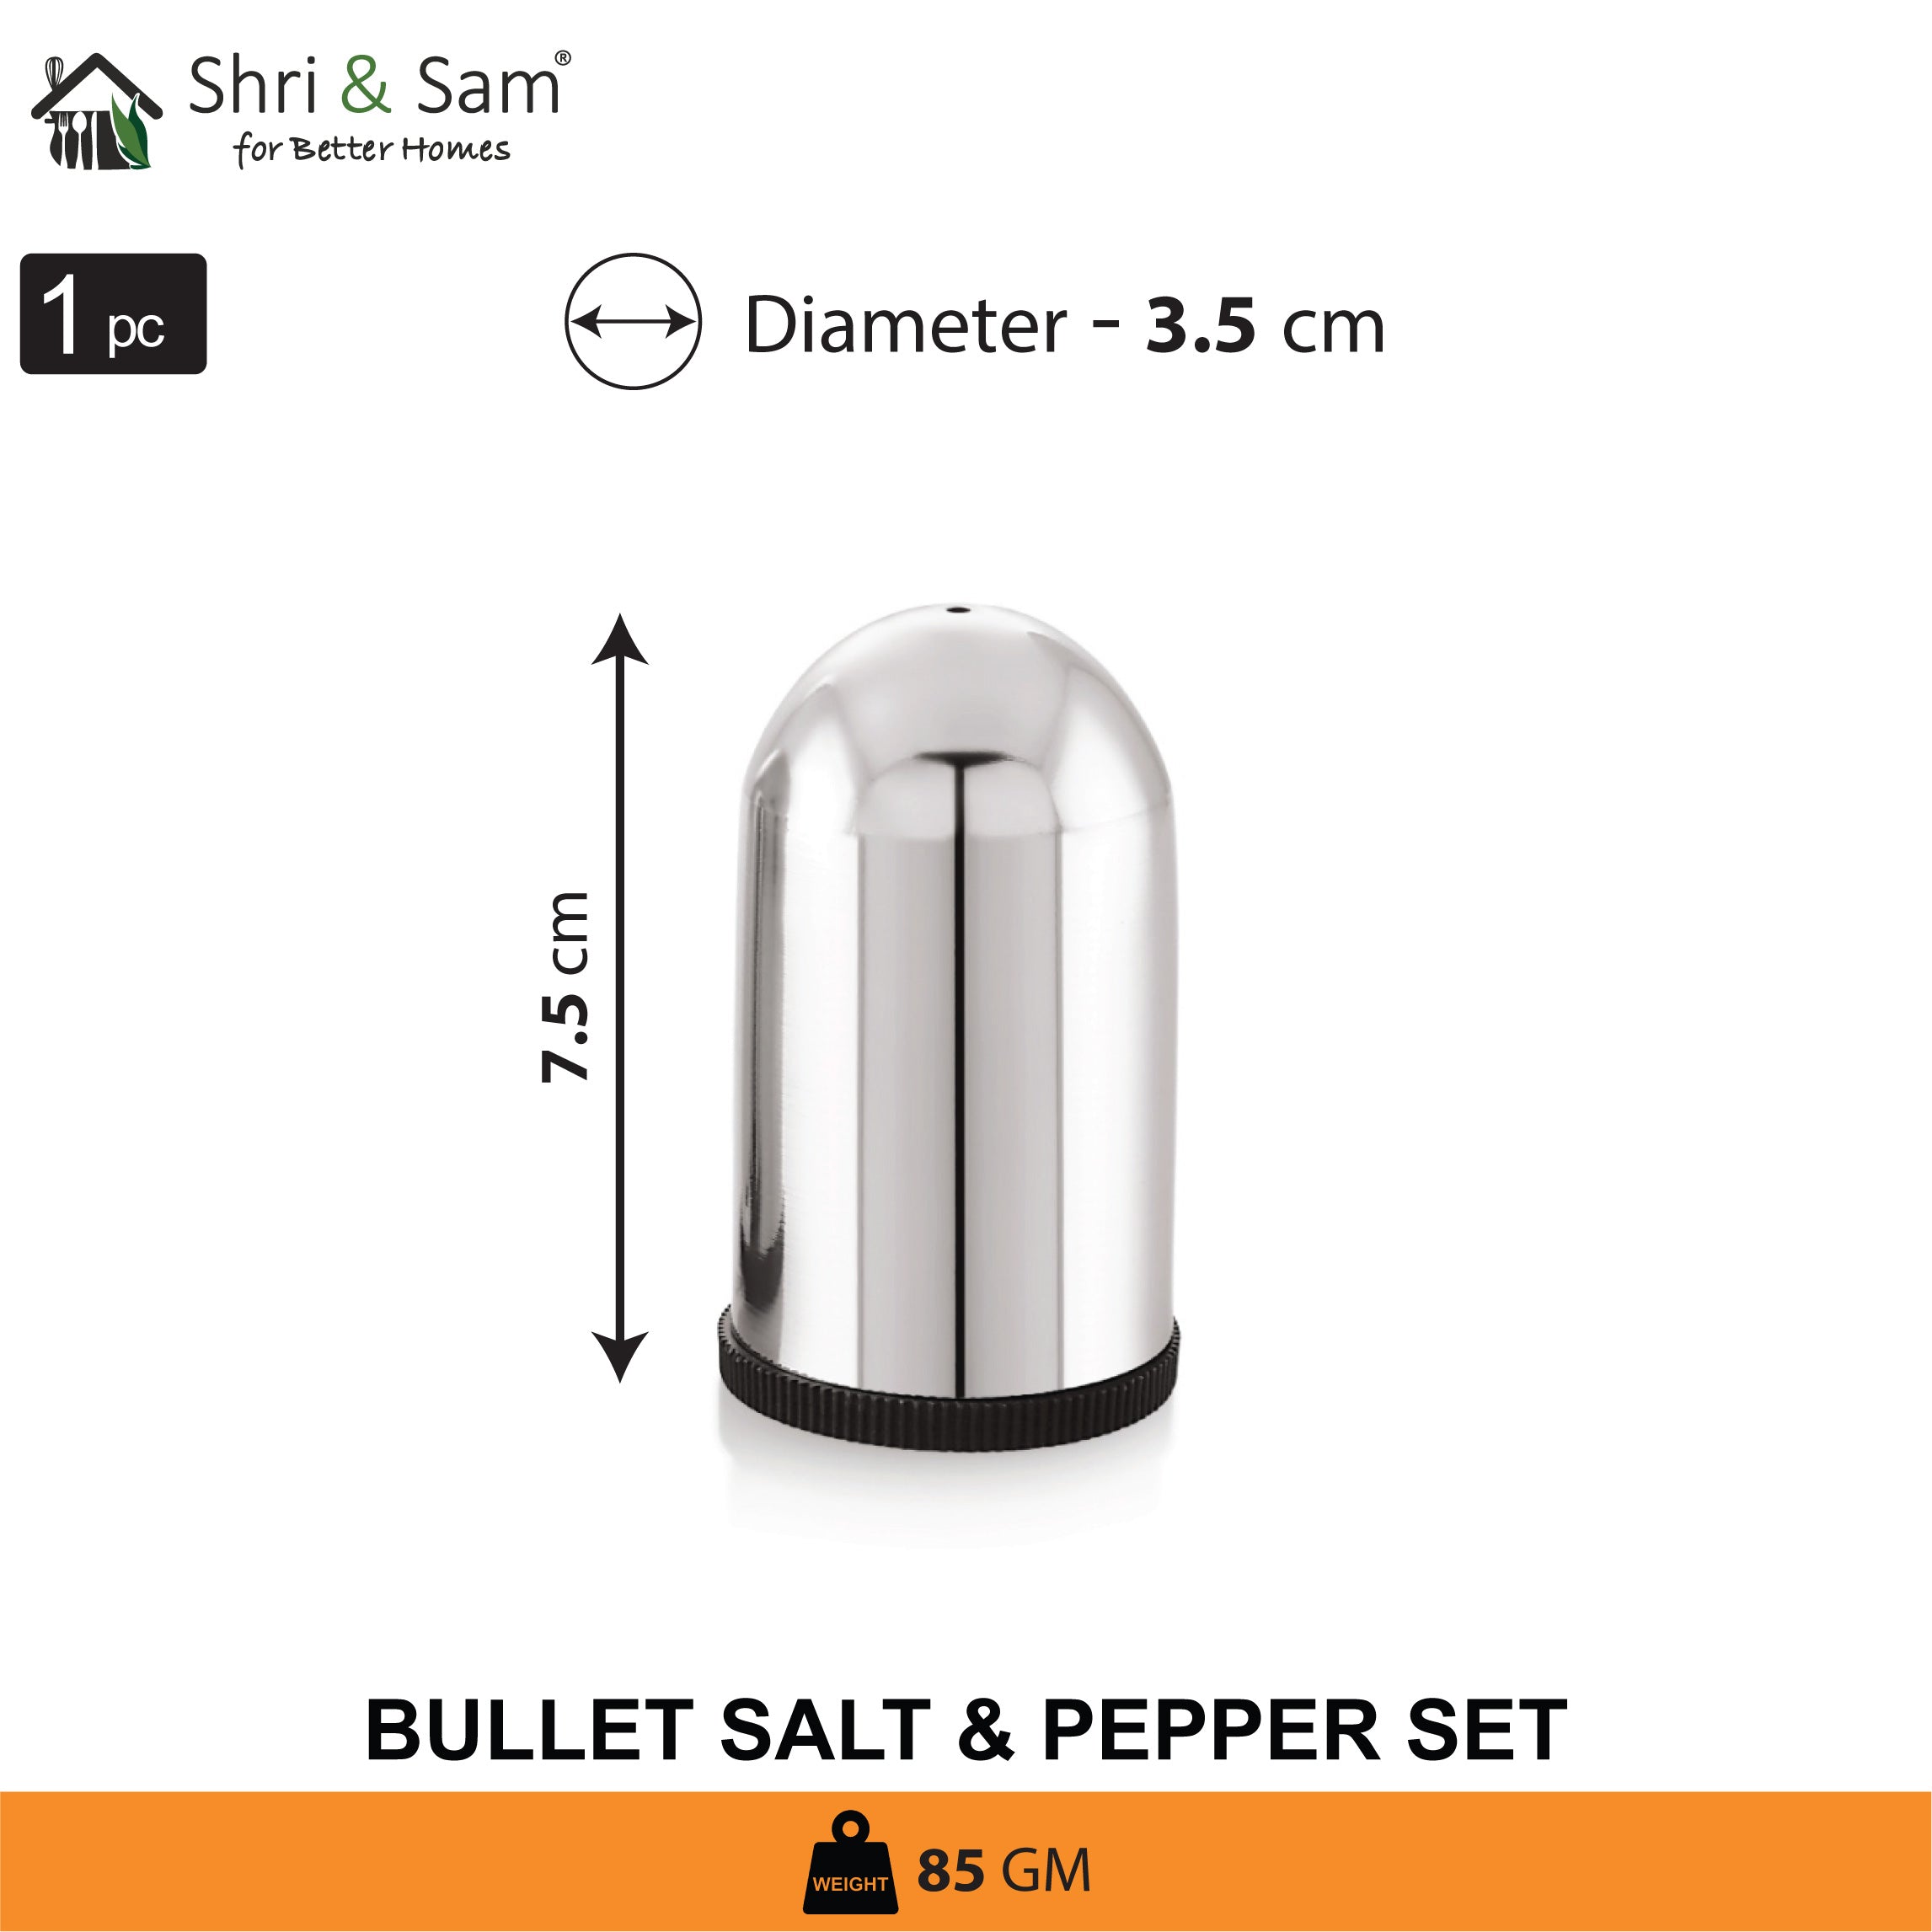 Stainless Steel Bullet Salt & Pepper